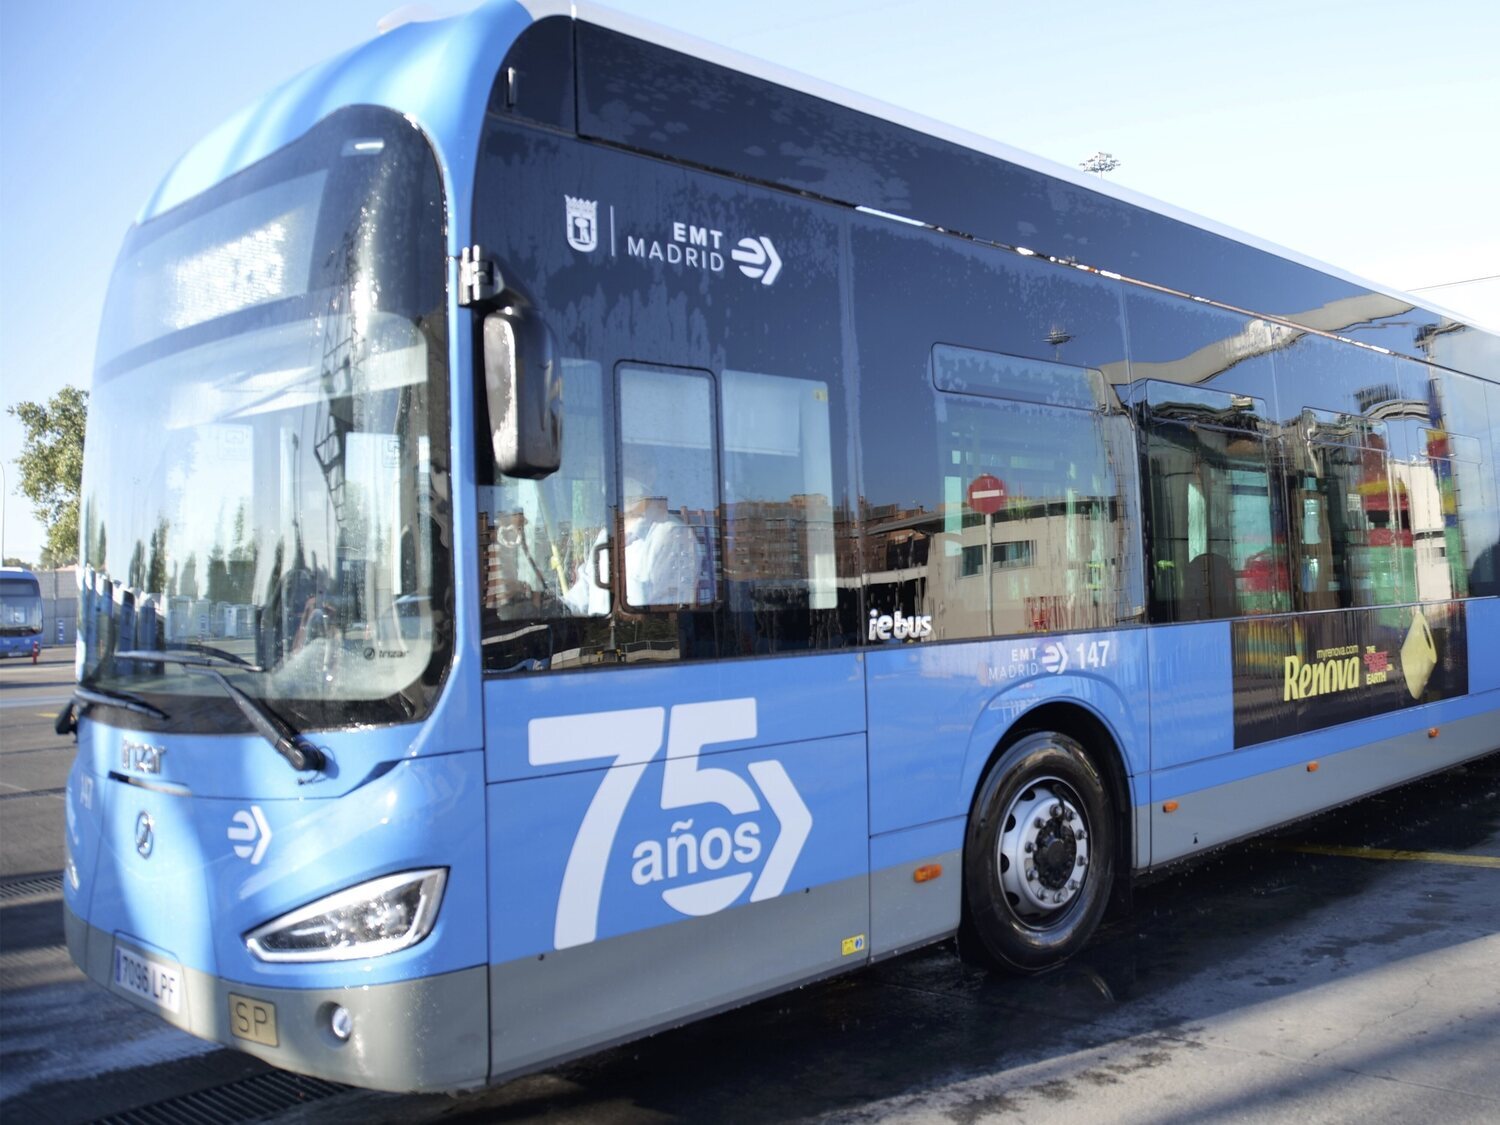 EMT de Madrid gratis: horarios y cómo coger el autobús sin pagar nada